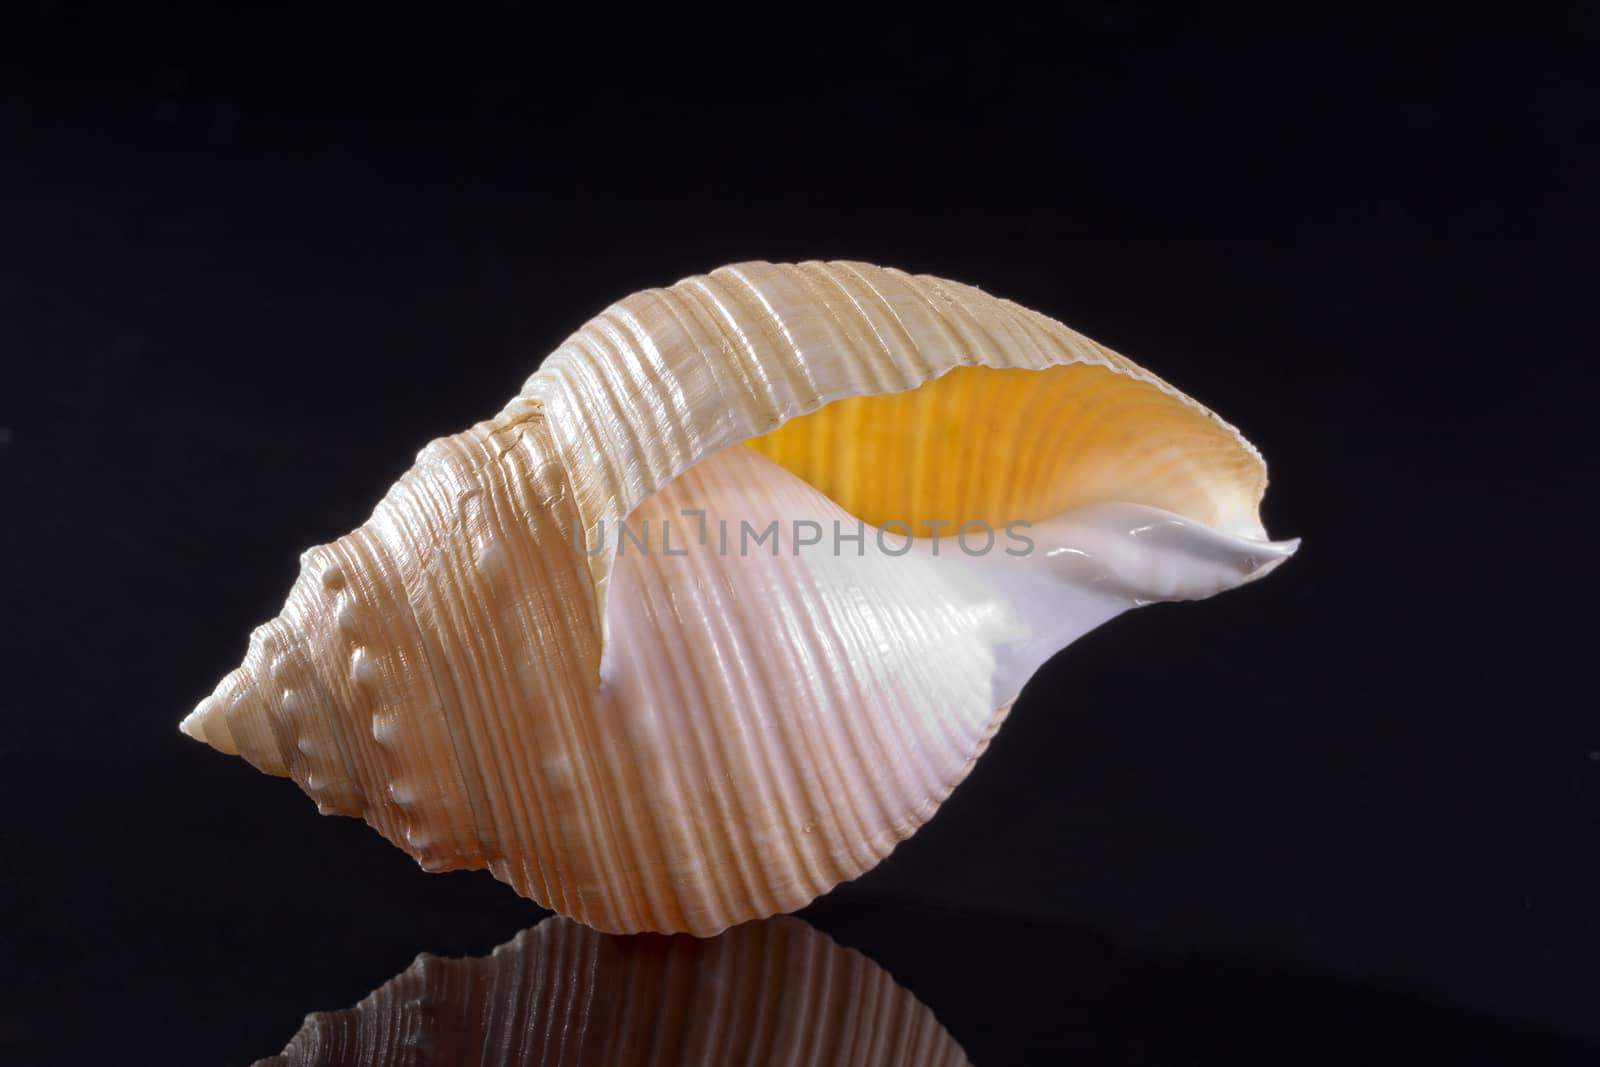 single seashell isolated on black background by mychadre77